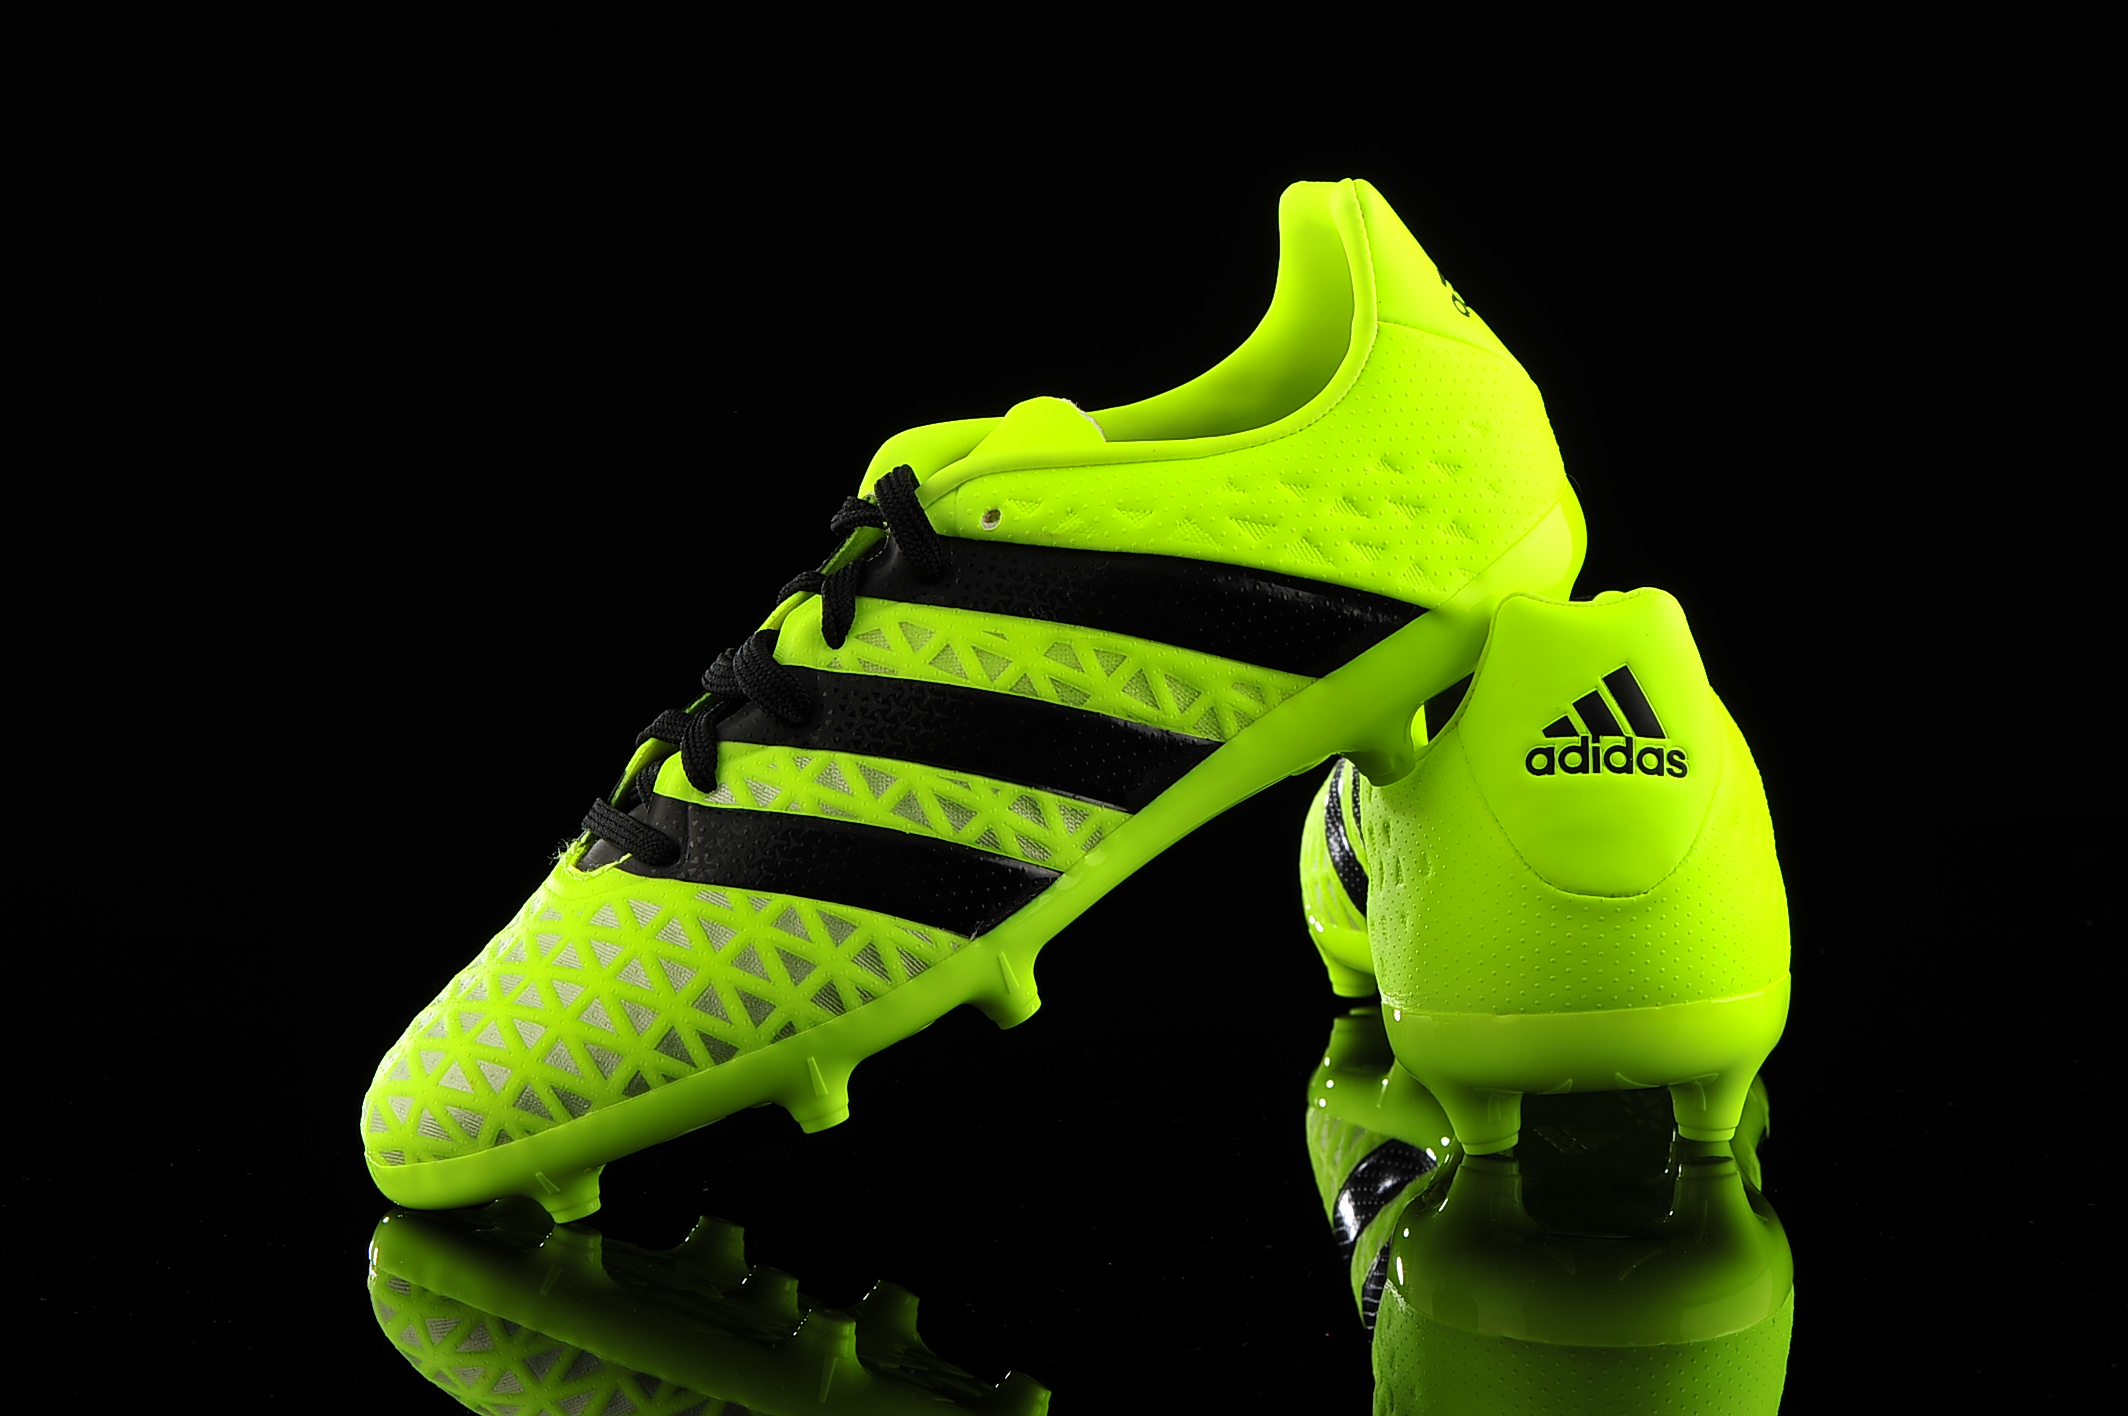 Adidas Ace 16 1 Fg Junior S R Gol Com Football Boots Equipment